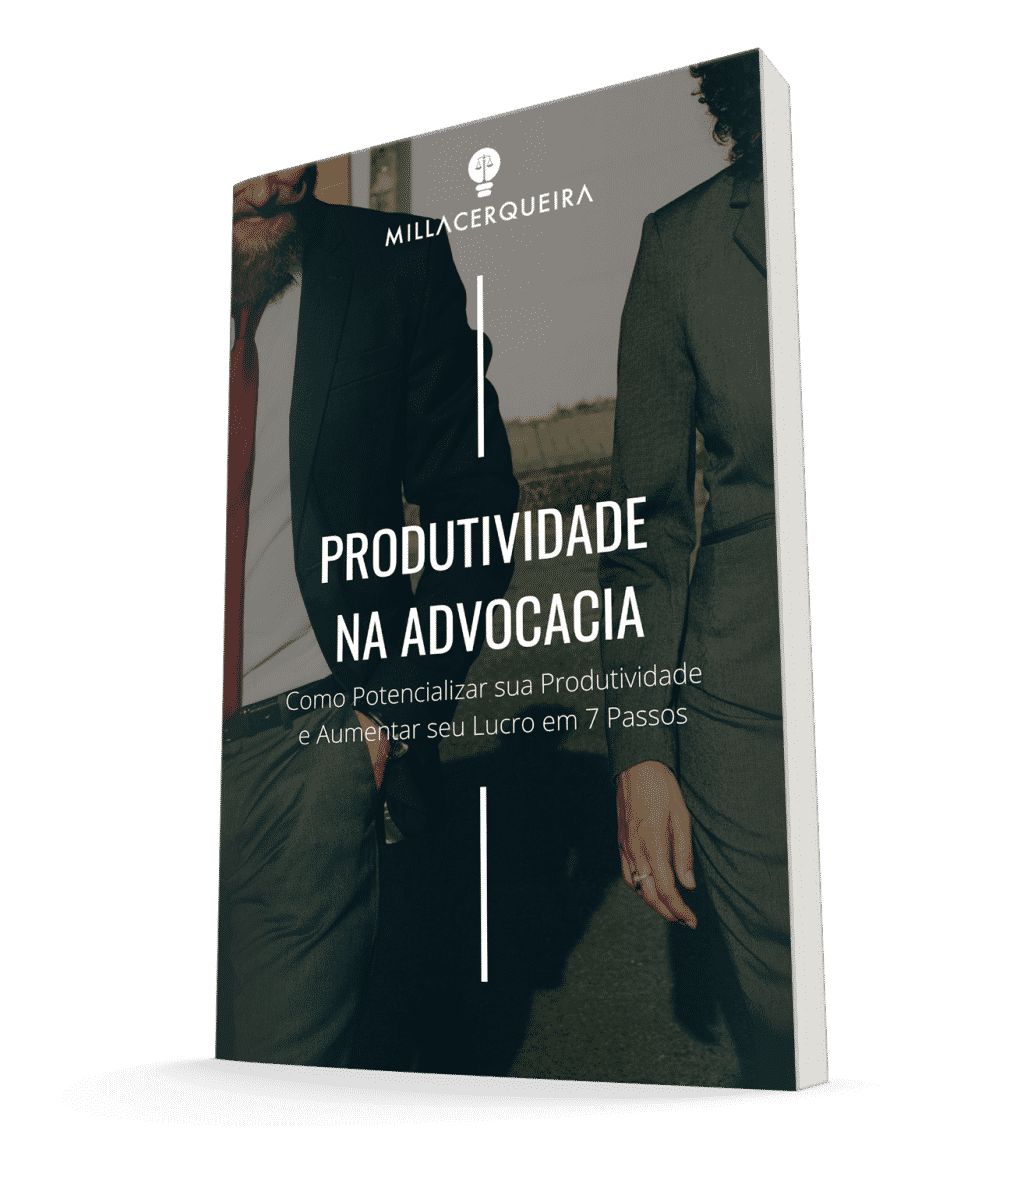 Ebook de Milla Cerqueira sobre Produtividade na Advocacia